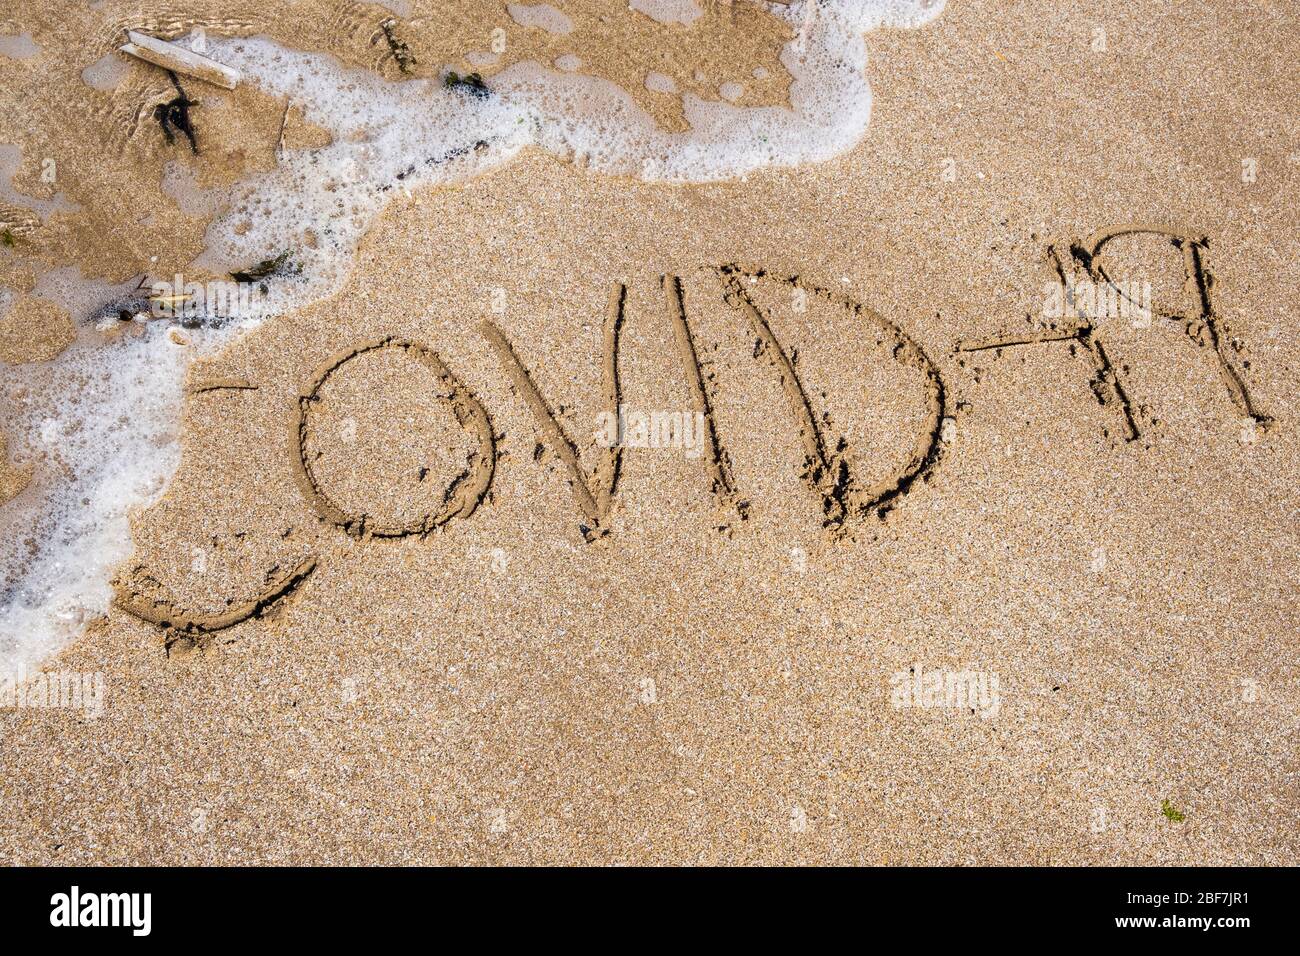 Covid-19 geschrieben in Sand, der von eingehender Flut weggespült wird. Zur Veranschaulichung des Konzepts der Coronavirus-Pandemie. Großbritannien Stockfoto